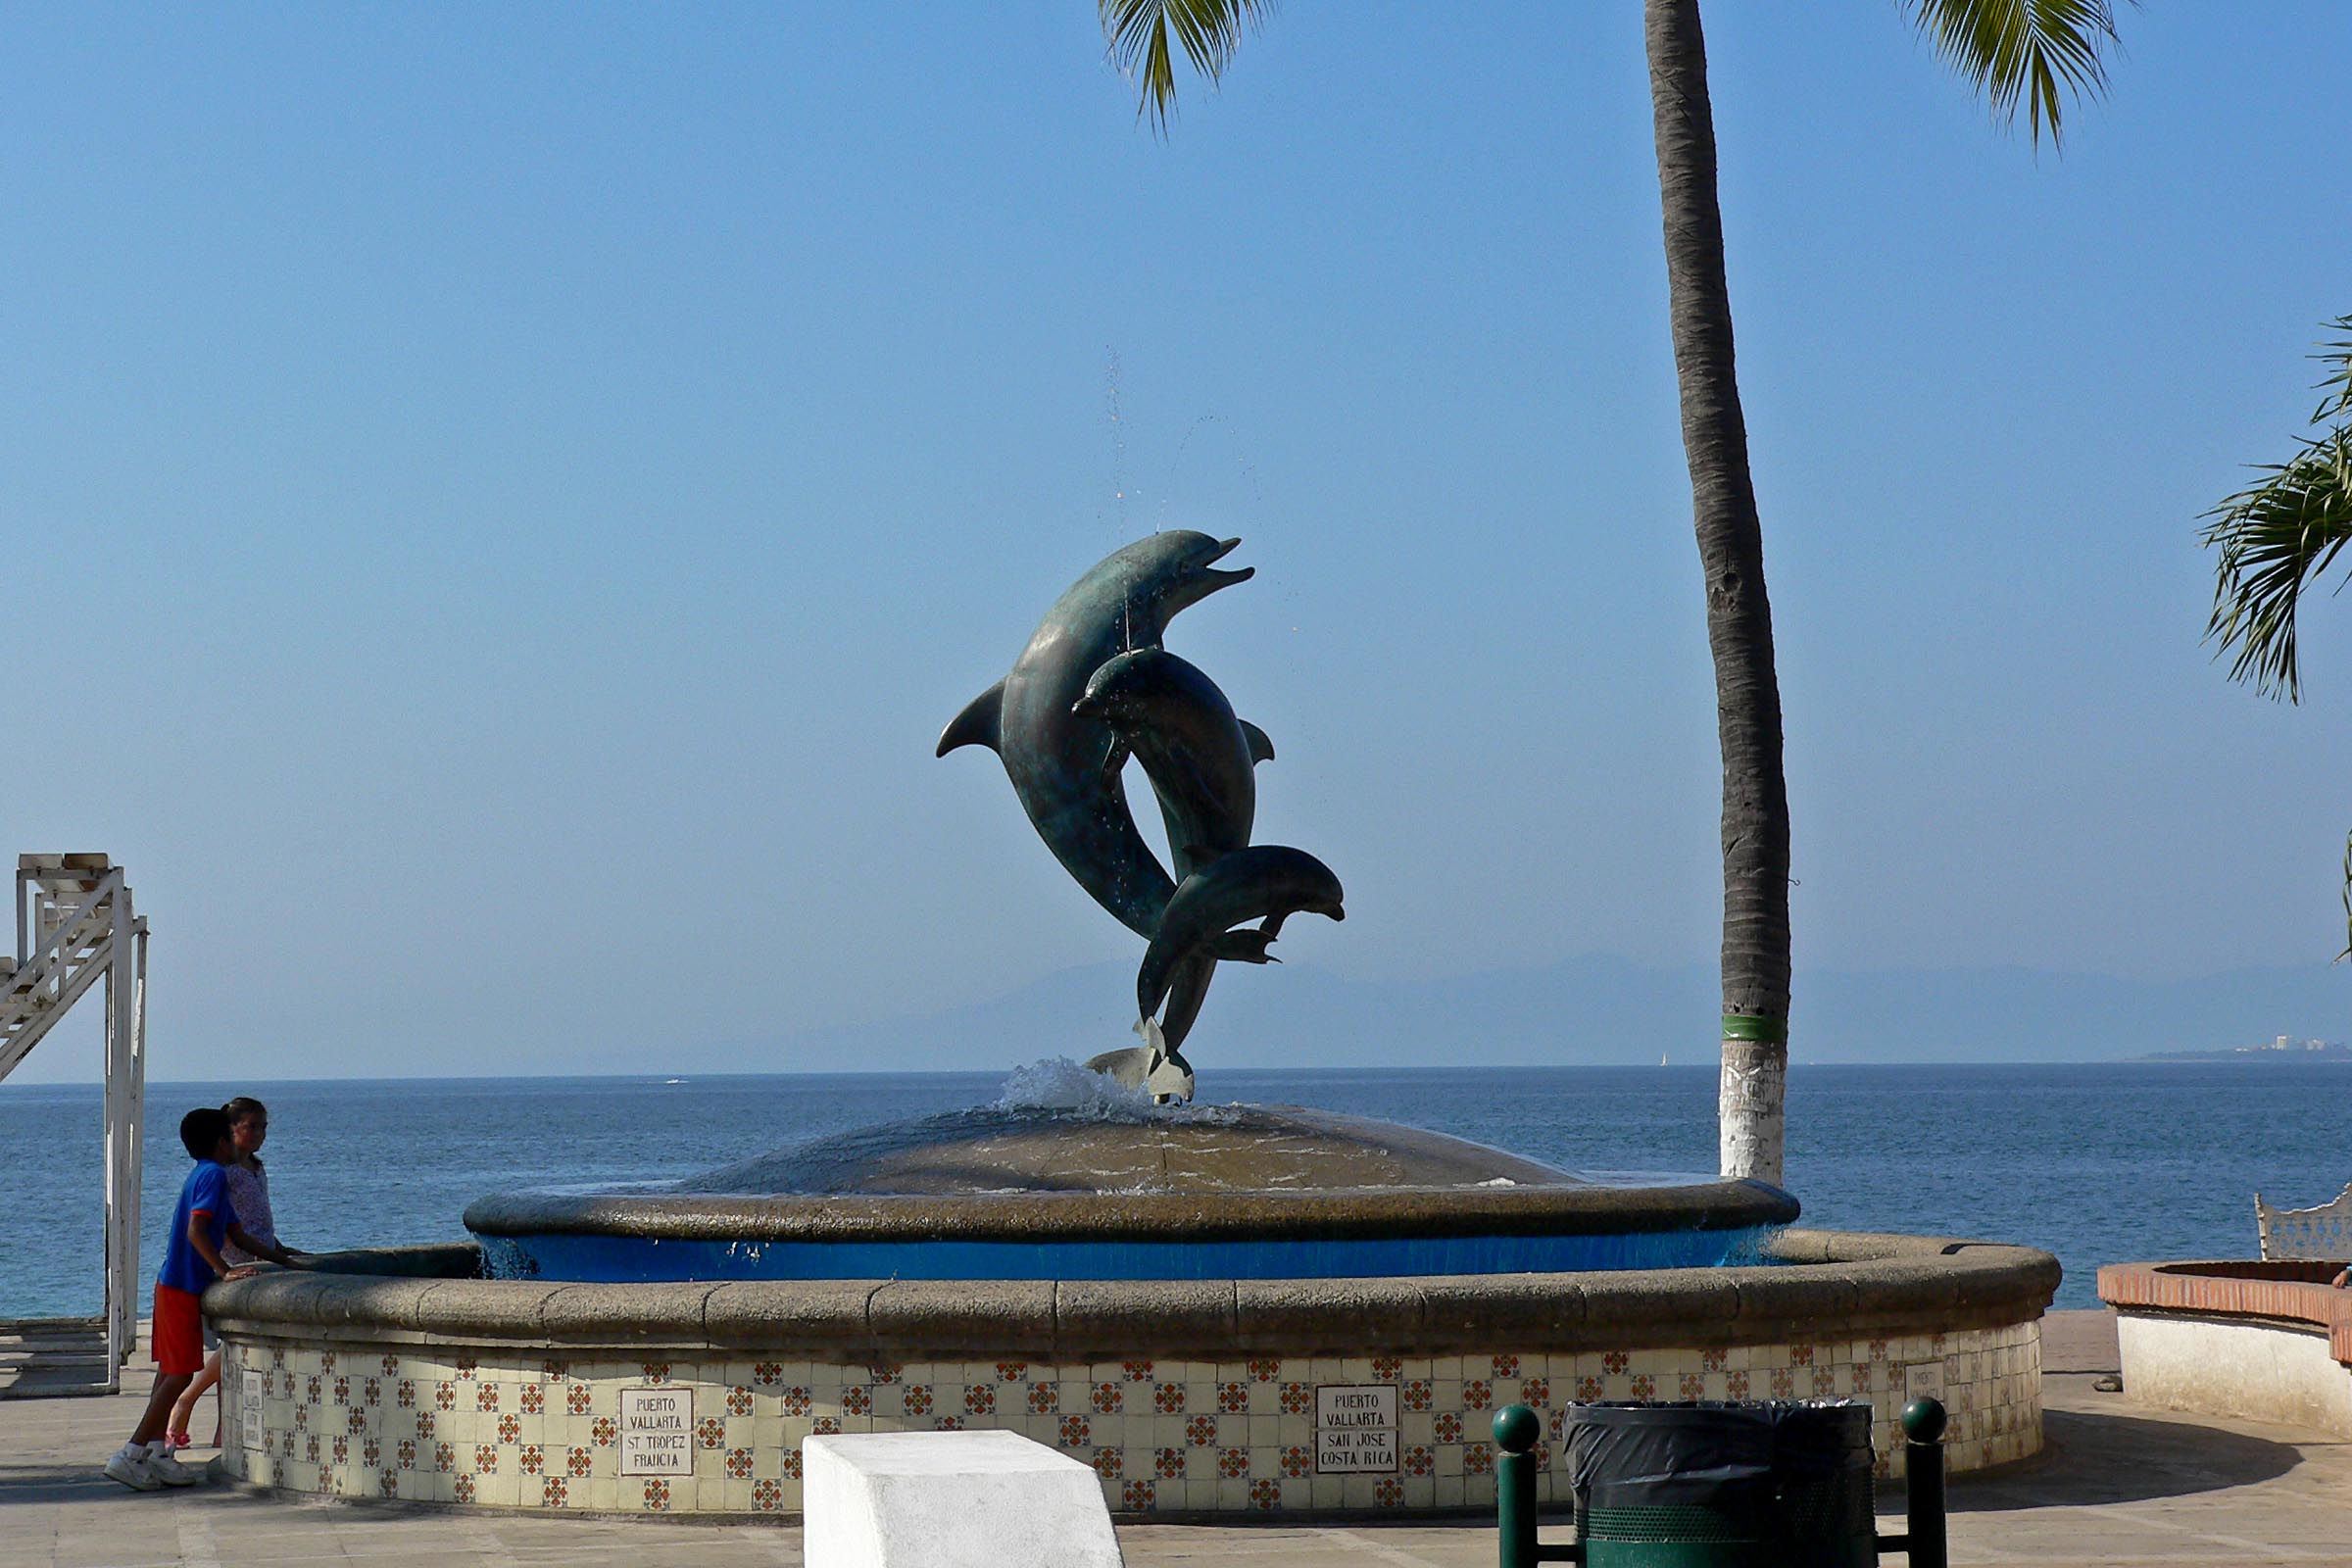 File:Puerto Vallarta dolphin statue.jpg - Wikimedia Commons